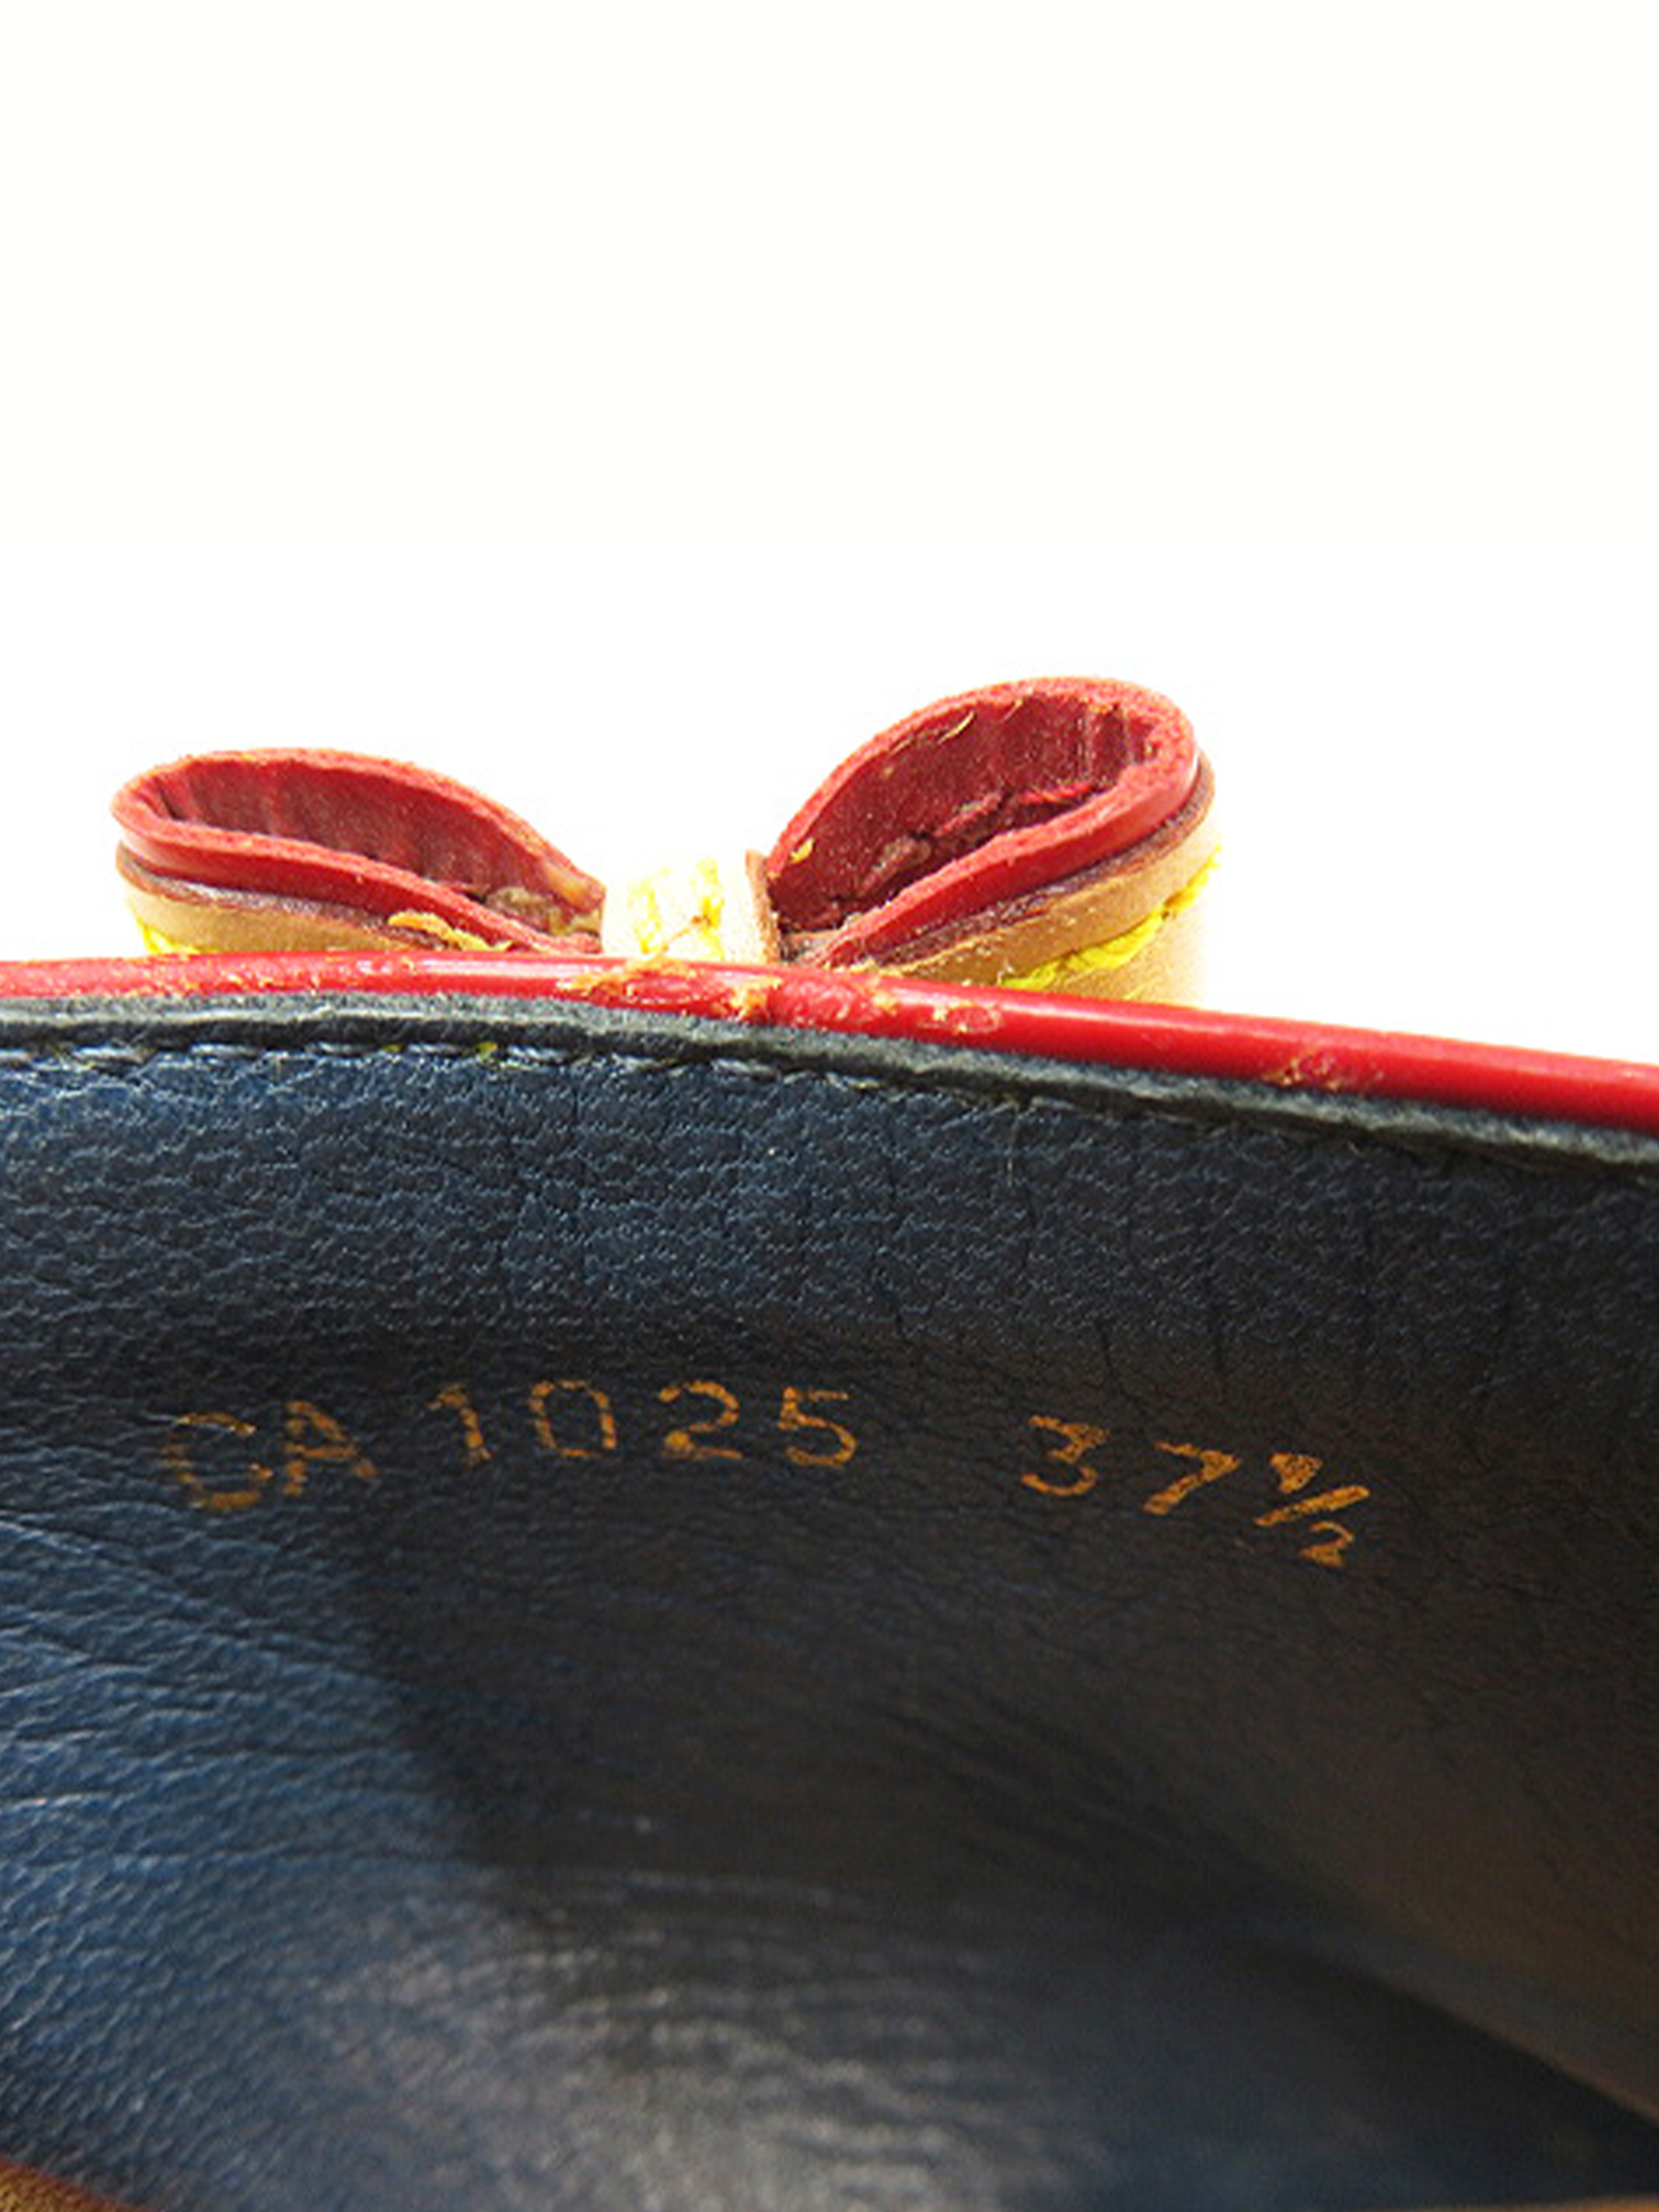 Louis Vuitton, Shoes, Louis Vuitton Wedge Sandals Size 37